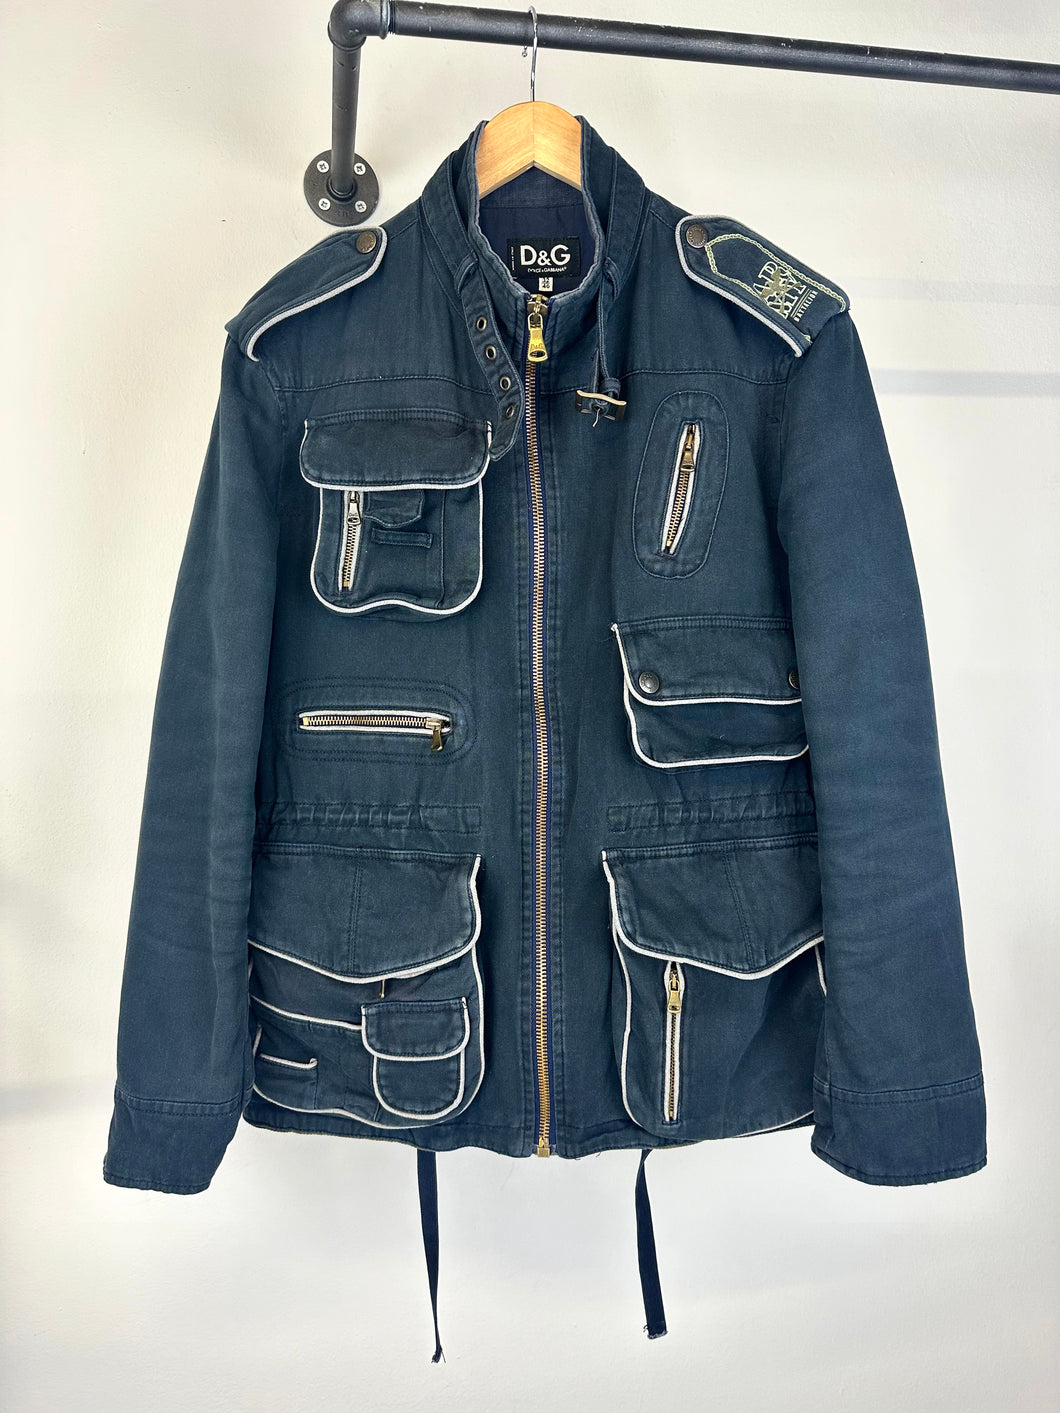 AW03 Dolce & Gabbana military cargo jacket